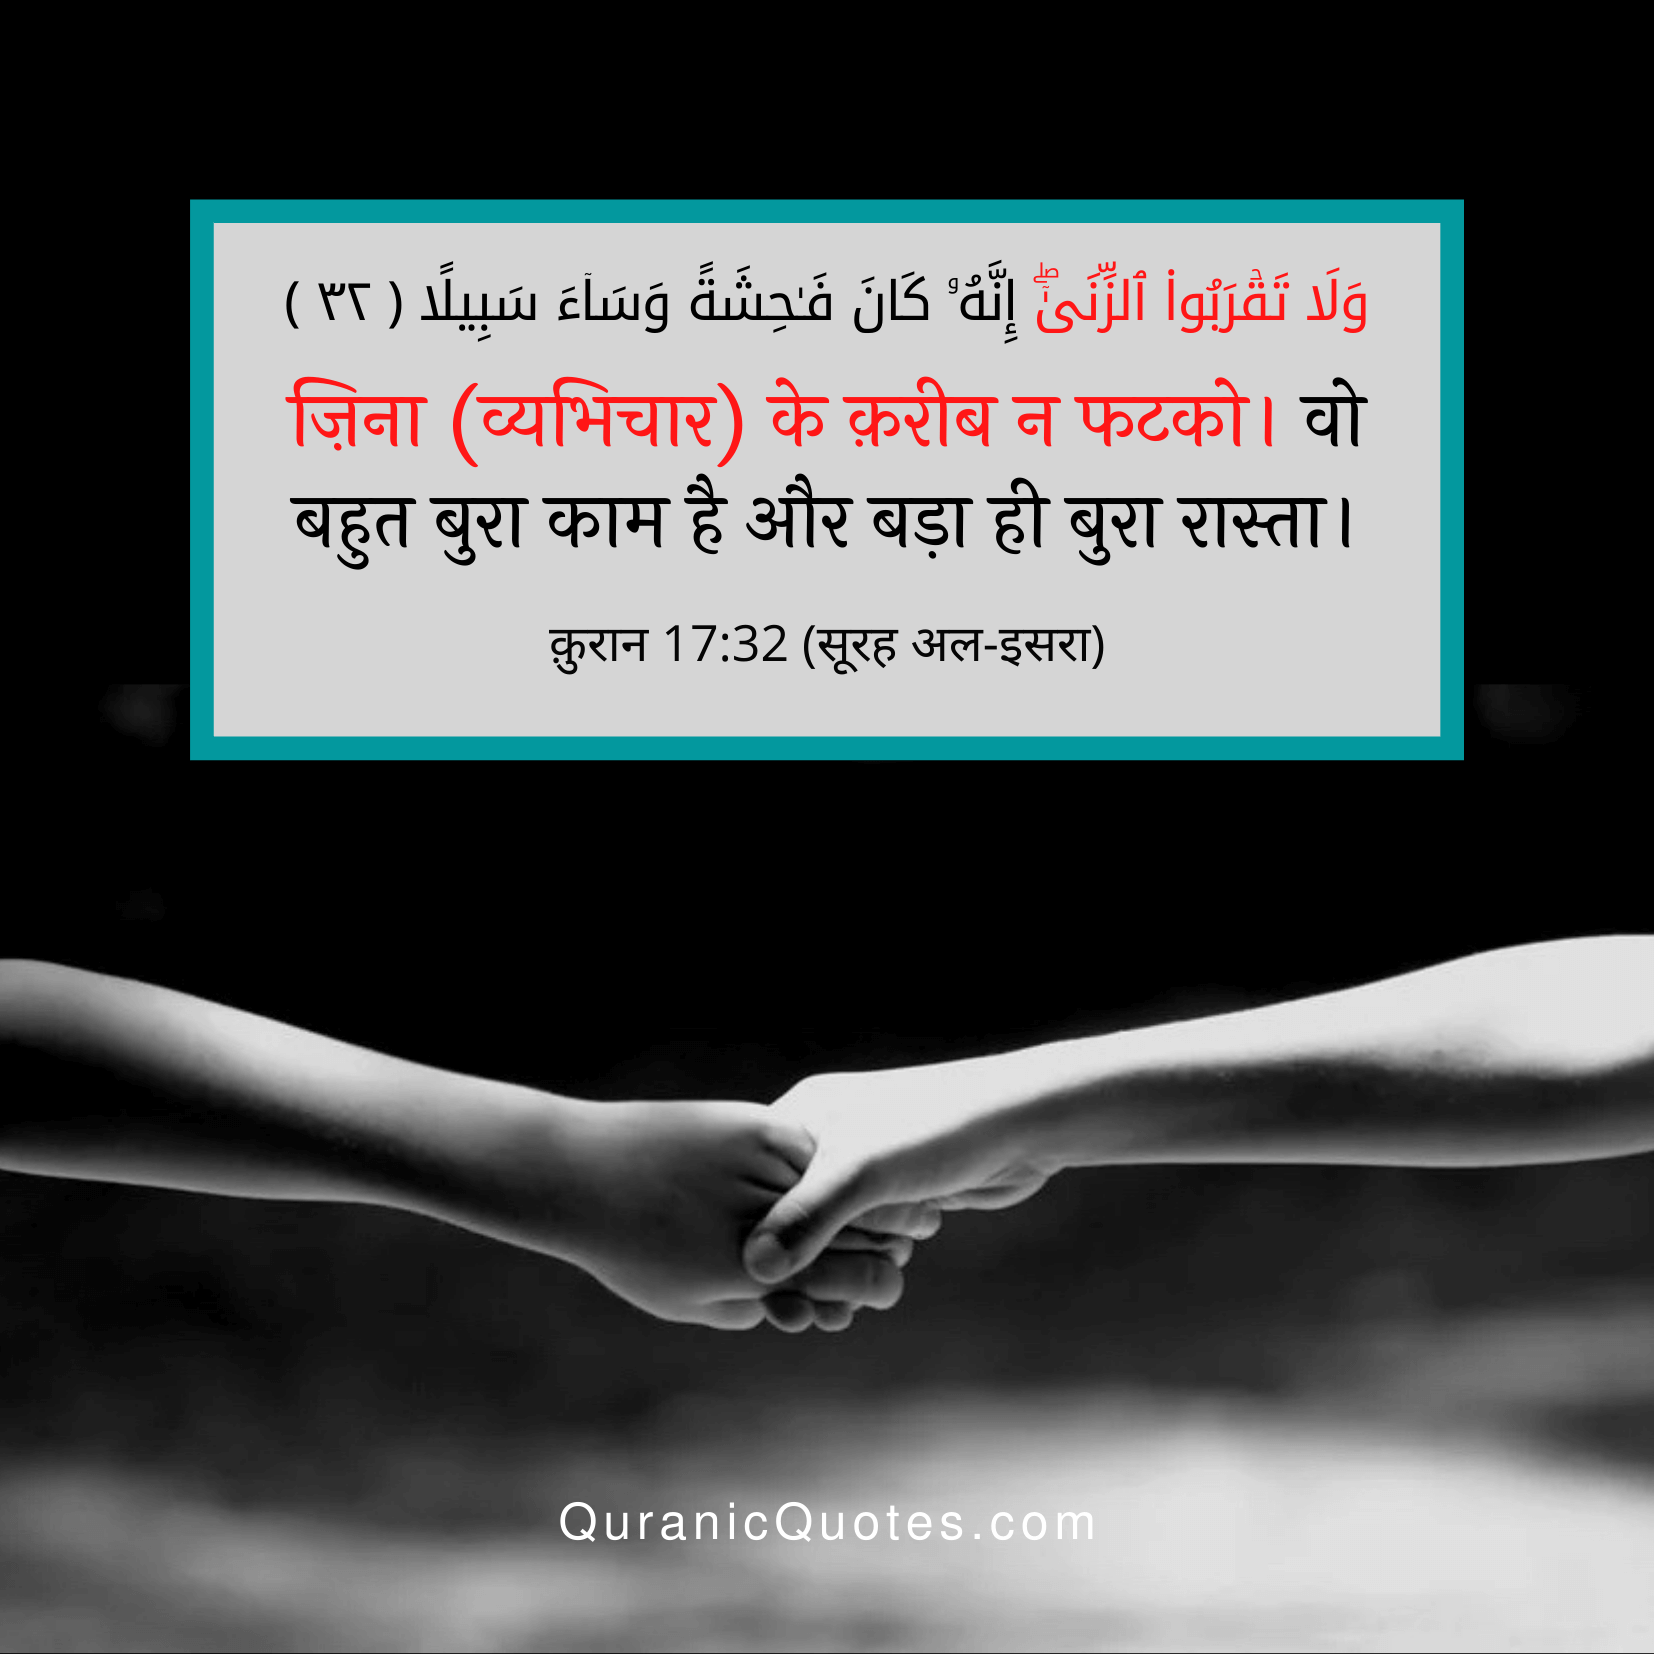 Quranic Quotes Hindi #192Quranic Quotes Hindi #213